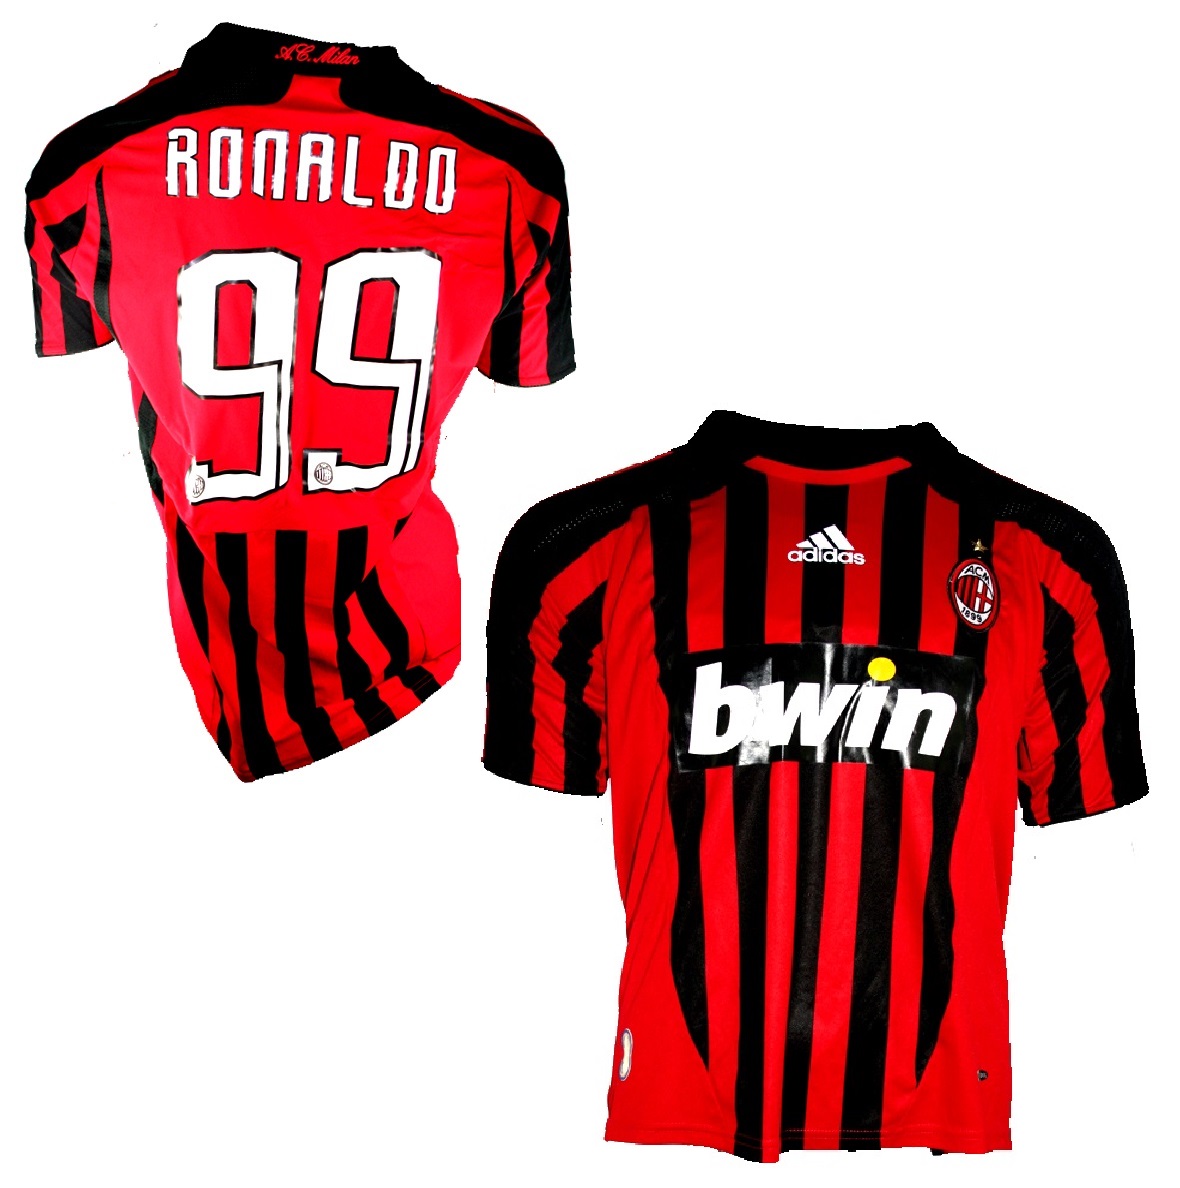 Adidas AC Milan jersey 99 Ronaldo el 